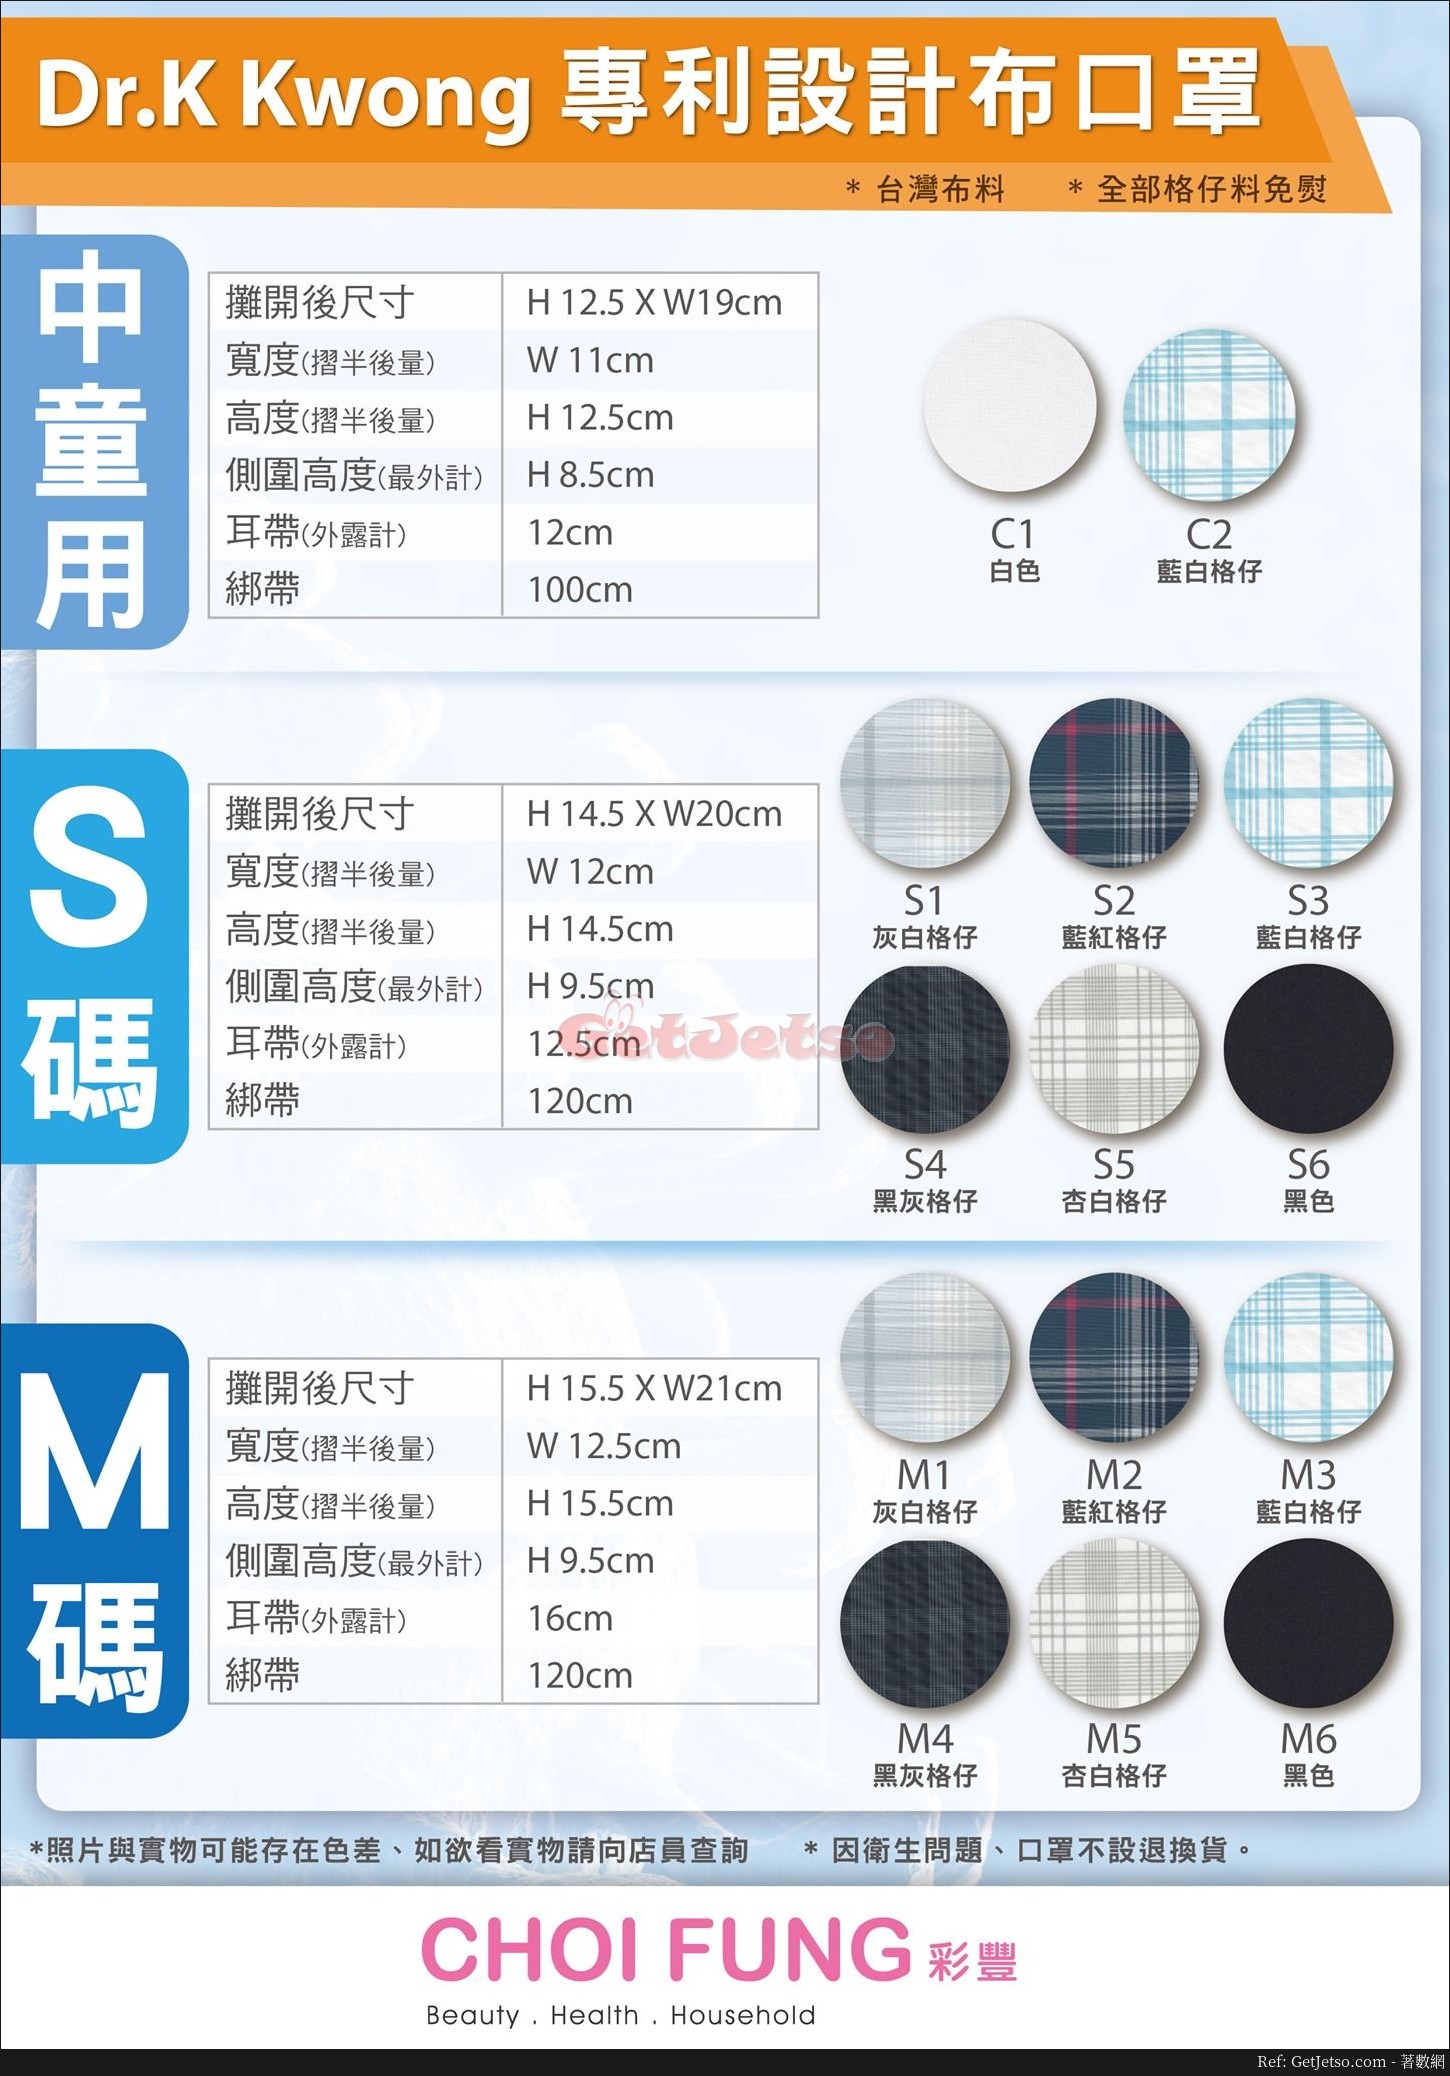 彩豐行4月4日發售Dr.K Kwong專利設計布口罩圖片2